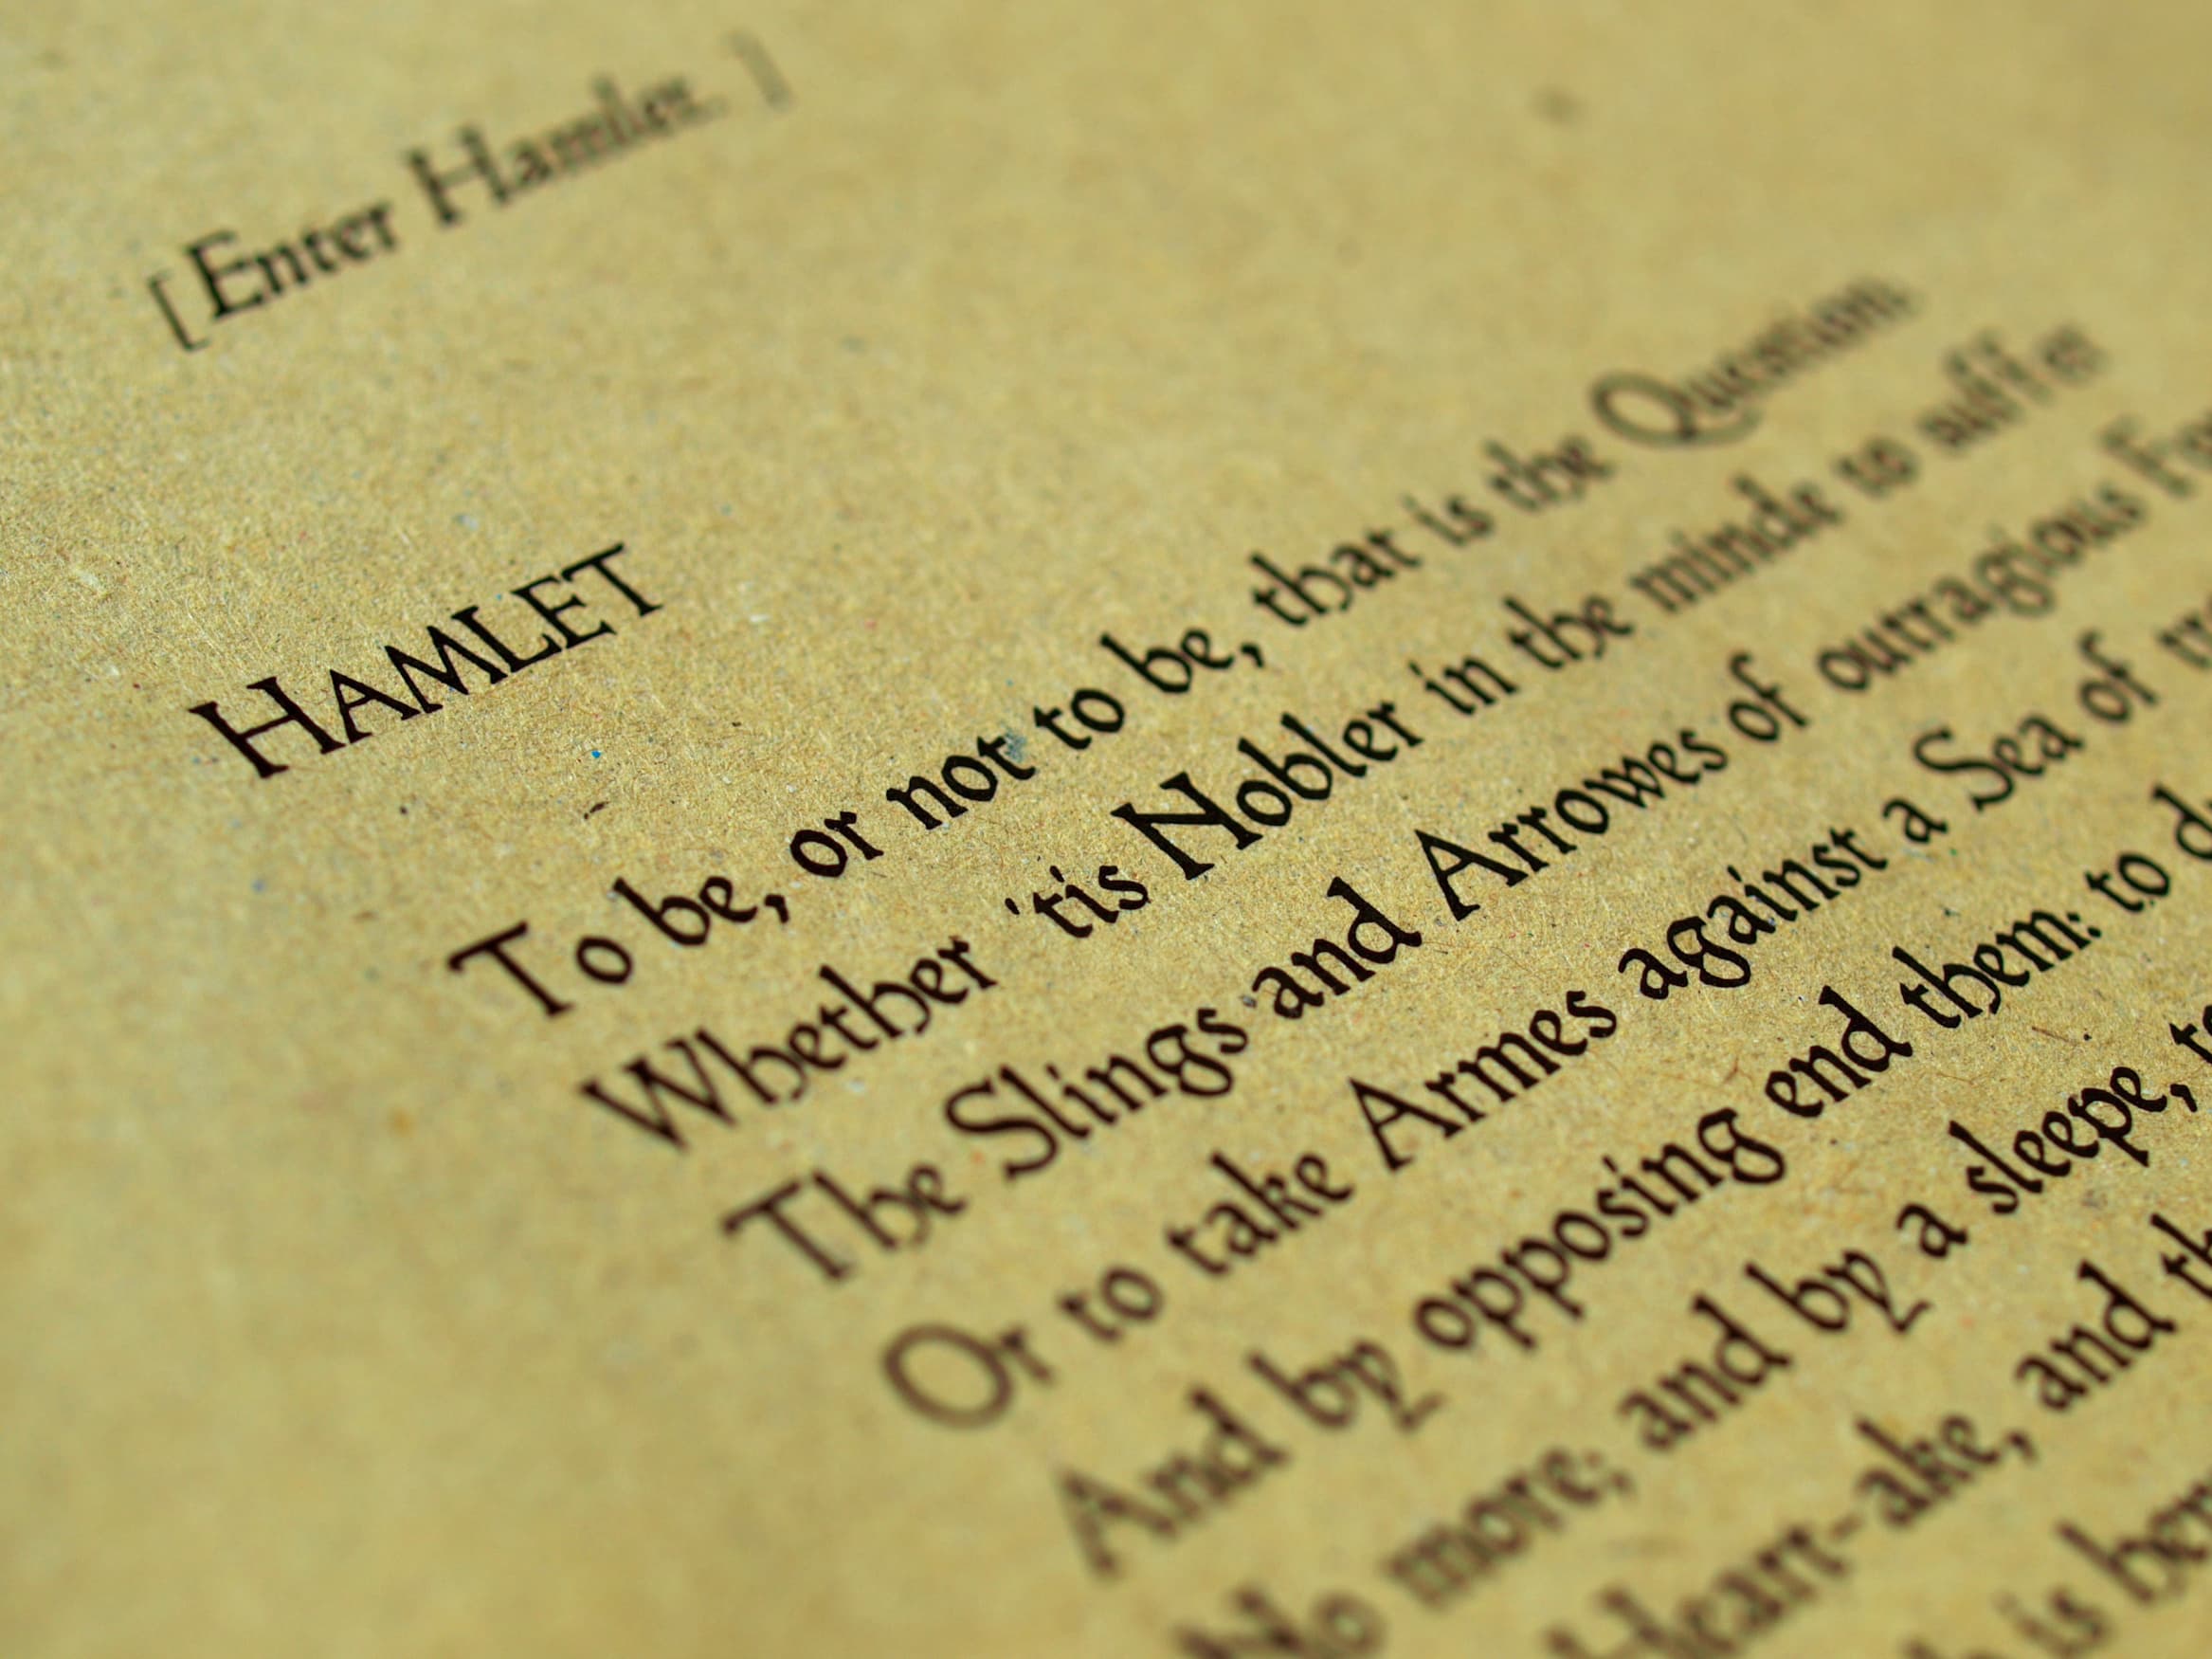 Página do livro "Hamlet", de Shakespeare